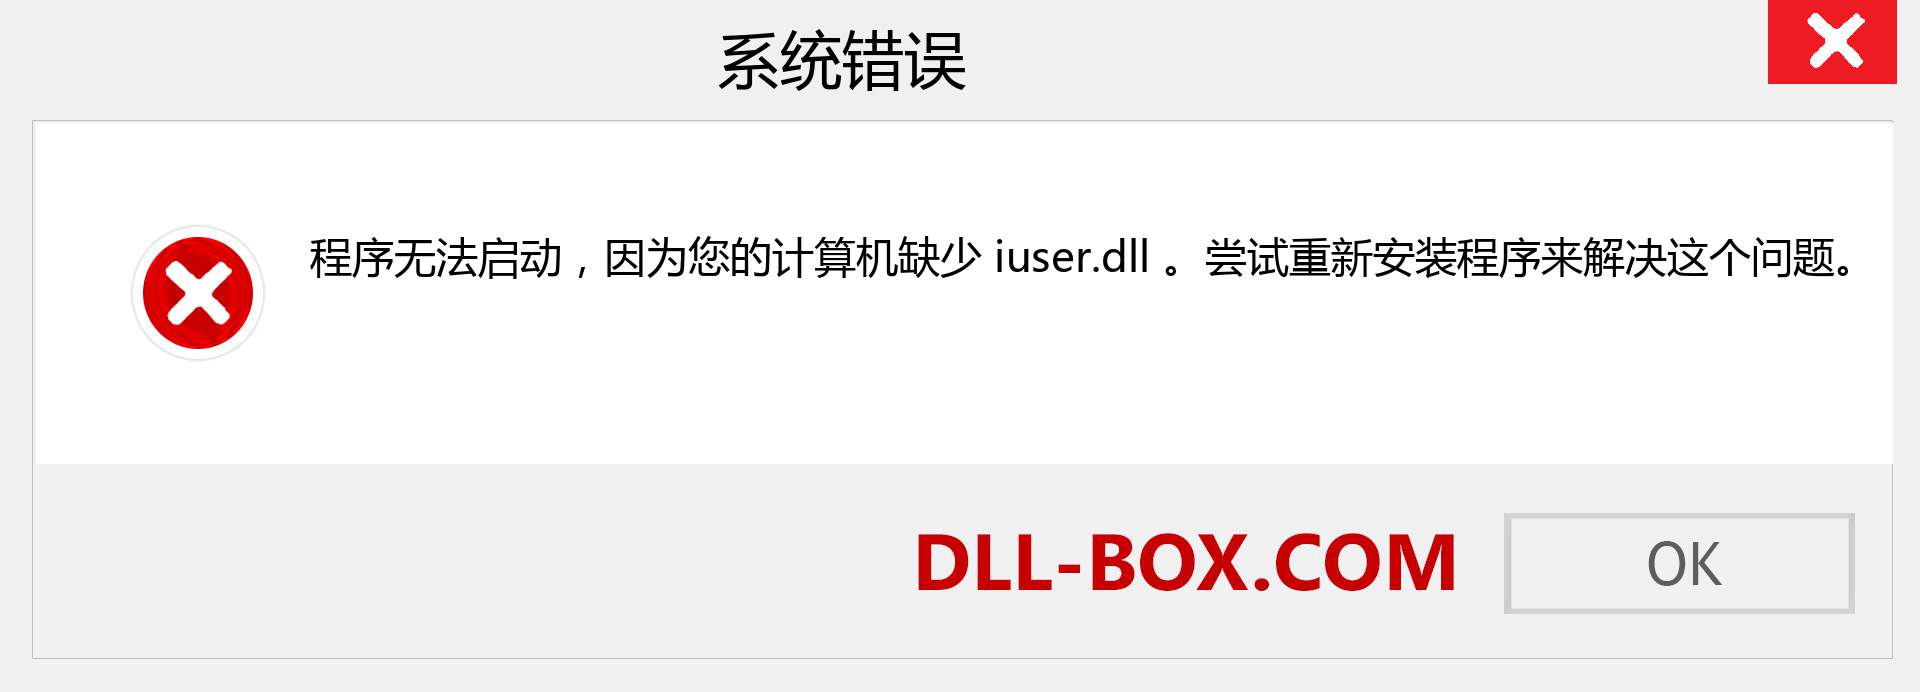 iuser.dll 文件丢失？。 适用于 Windows 7、8、10 的下载 - 修复 Windows、照片、图像上的 iuser dll 丢失错误